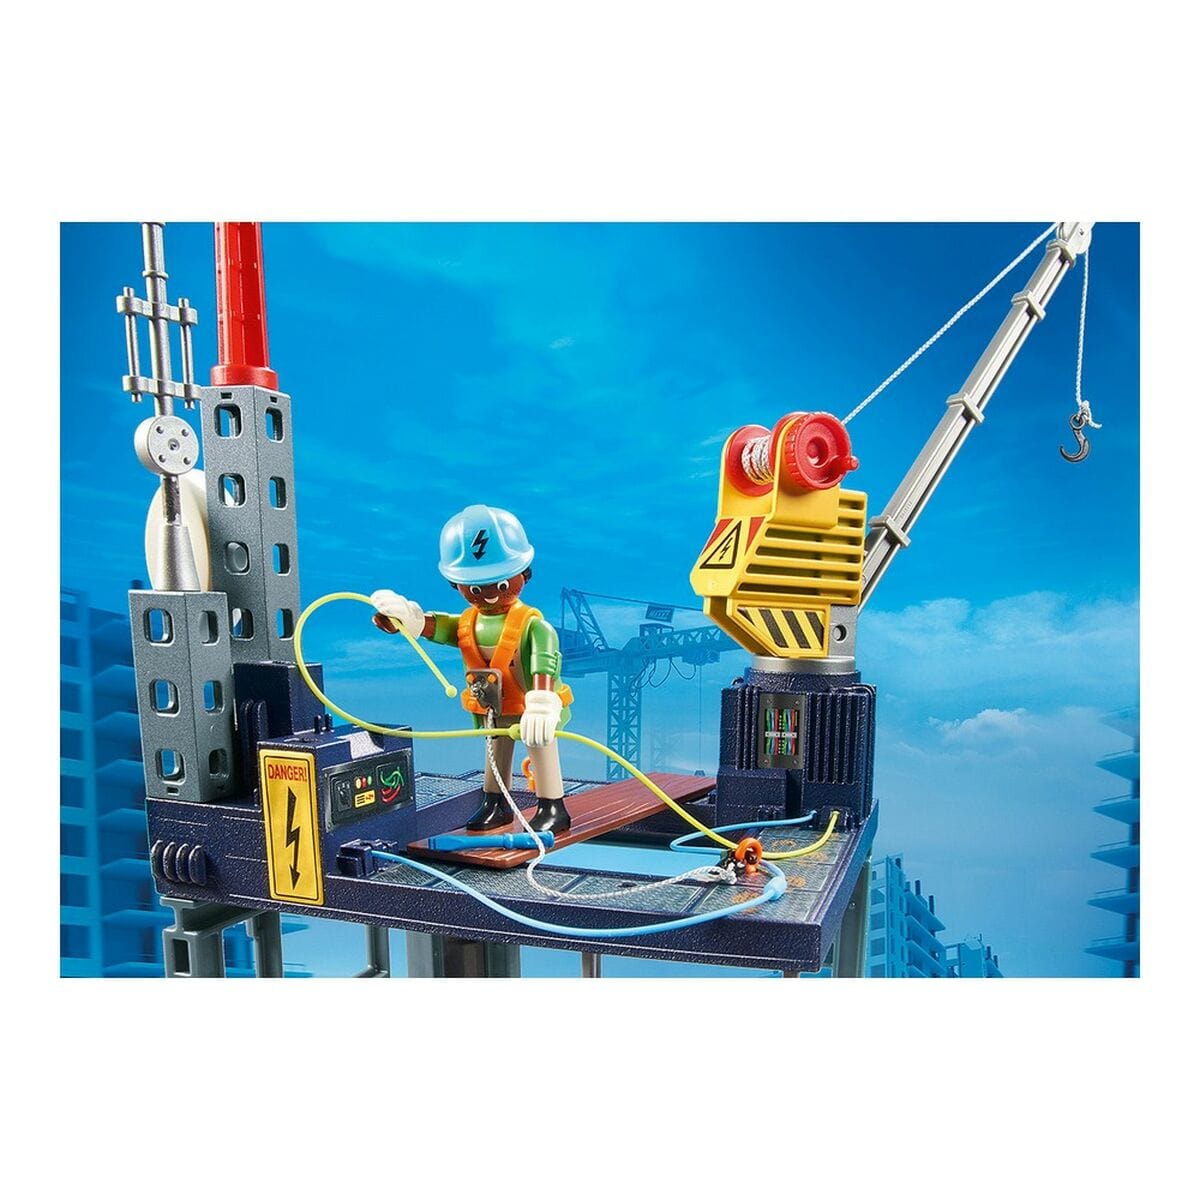 Playmobil Spielzeug | Kostüme > Spielzeug und Spiele > Action-Figuren Playset Playmobil 70816 70816